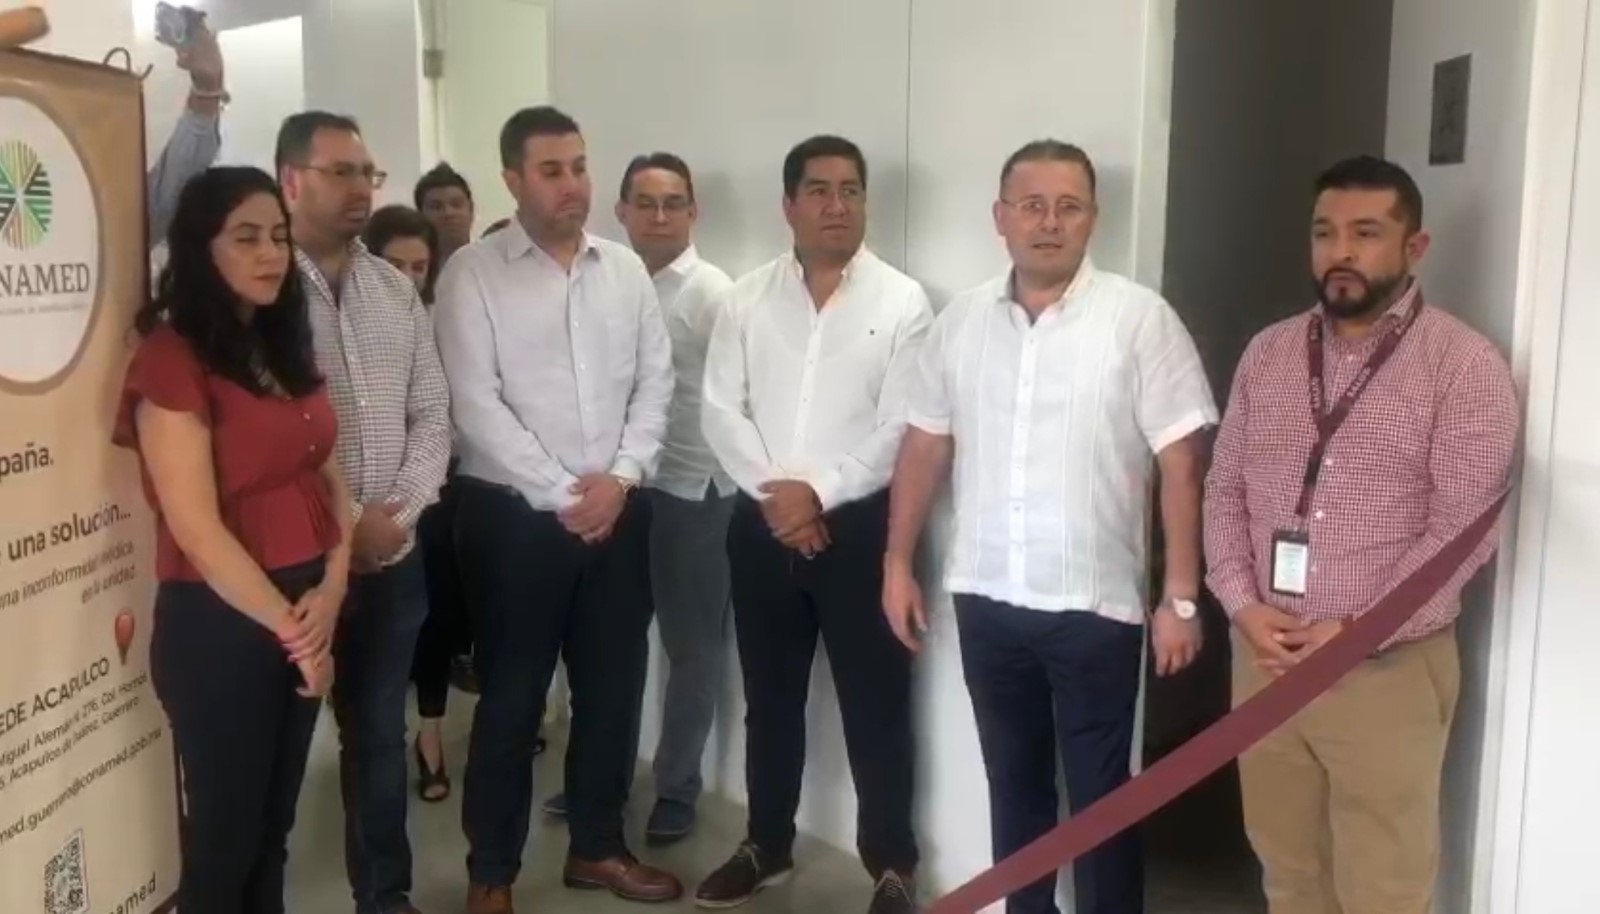 La Comisión Nacional de Arbitraje Médico instala sus oficinas y los módulos de atención a la población y profesionales de la salud en el edificio de la Secretaria de Salud en Acapulco, Guerrero